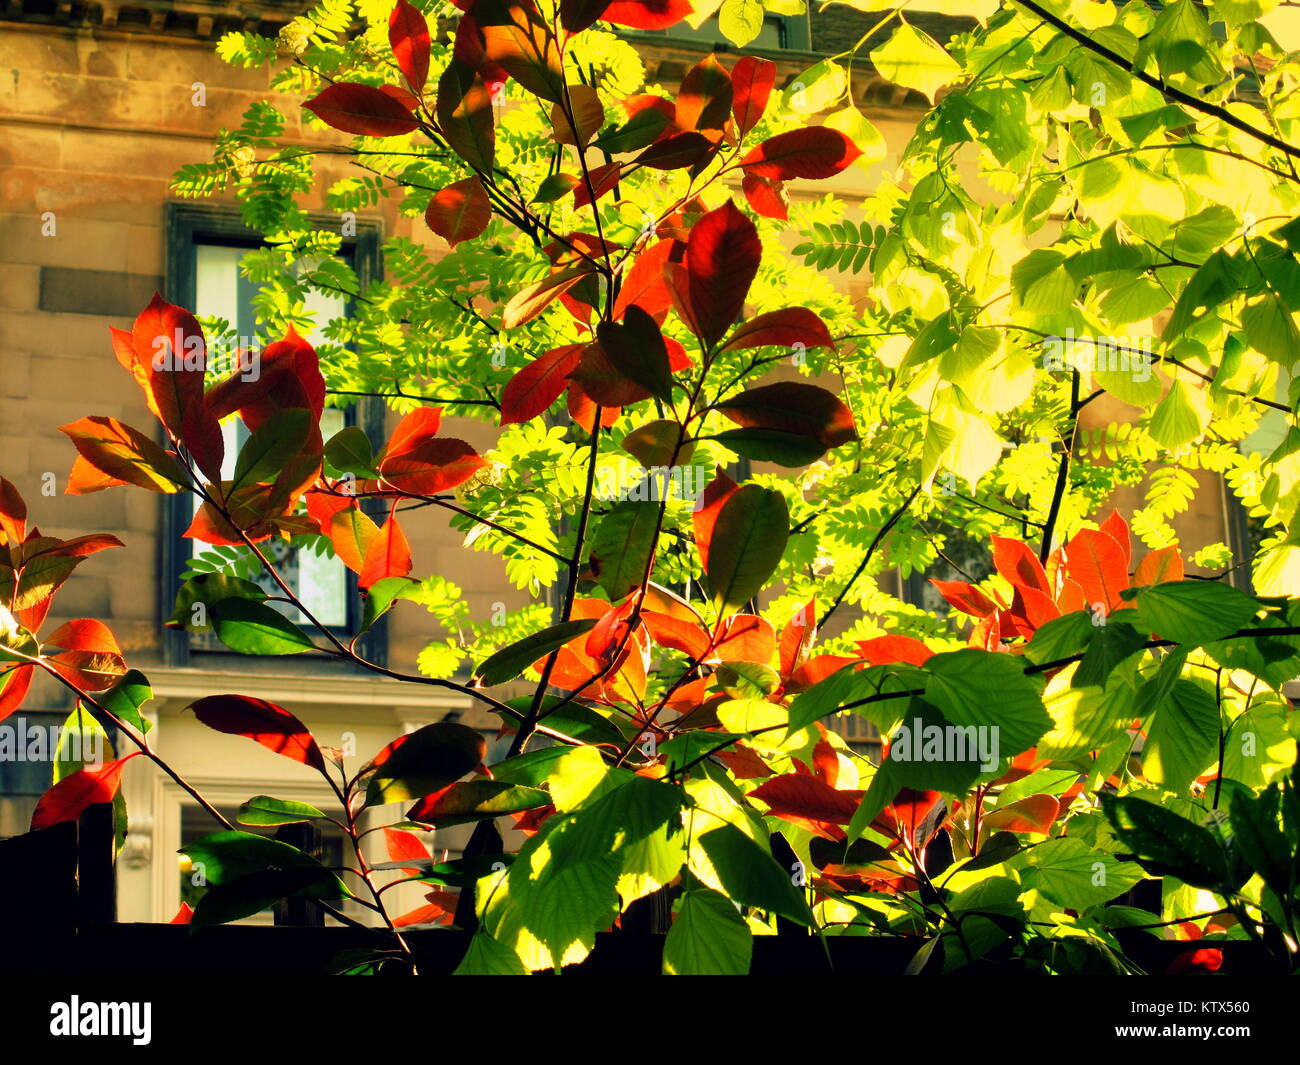 Sunny brillantes tonos árboles de jardín luz a través de las hojas de estilo Eduardiano victoriana estilo inglés villas adosadas suburbia concepto de ensalada de verano días Foto de stock